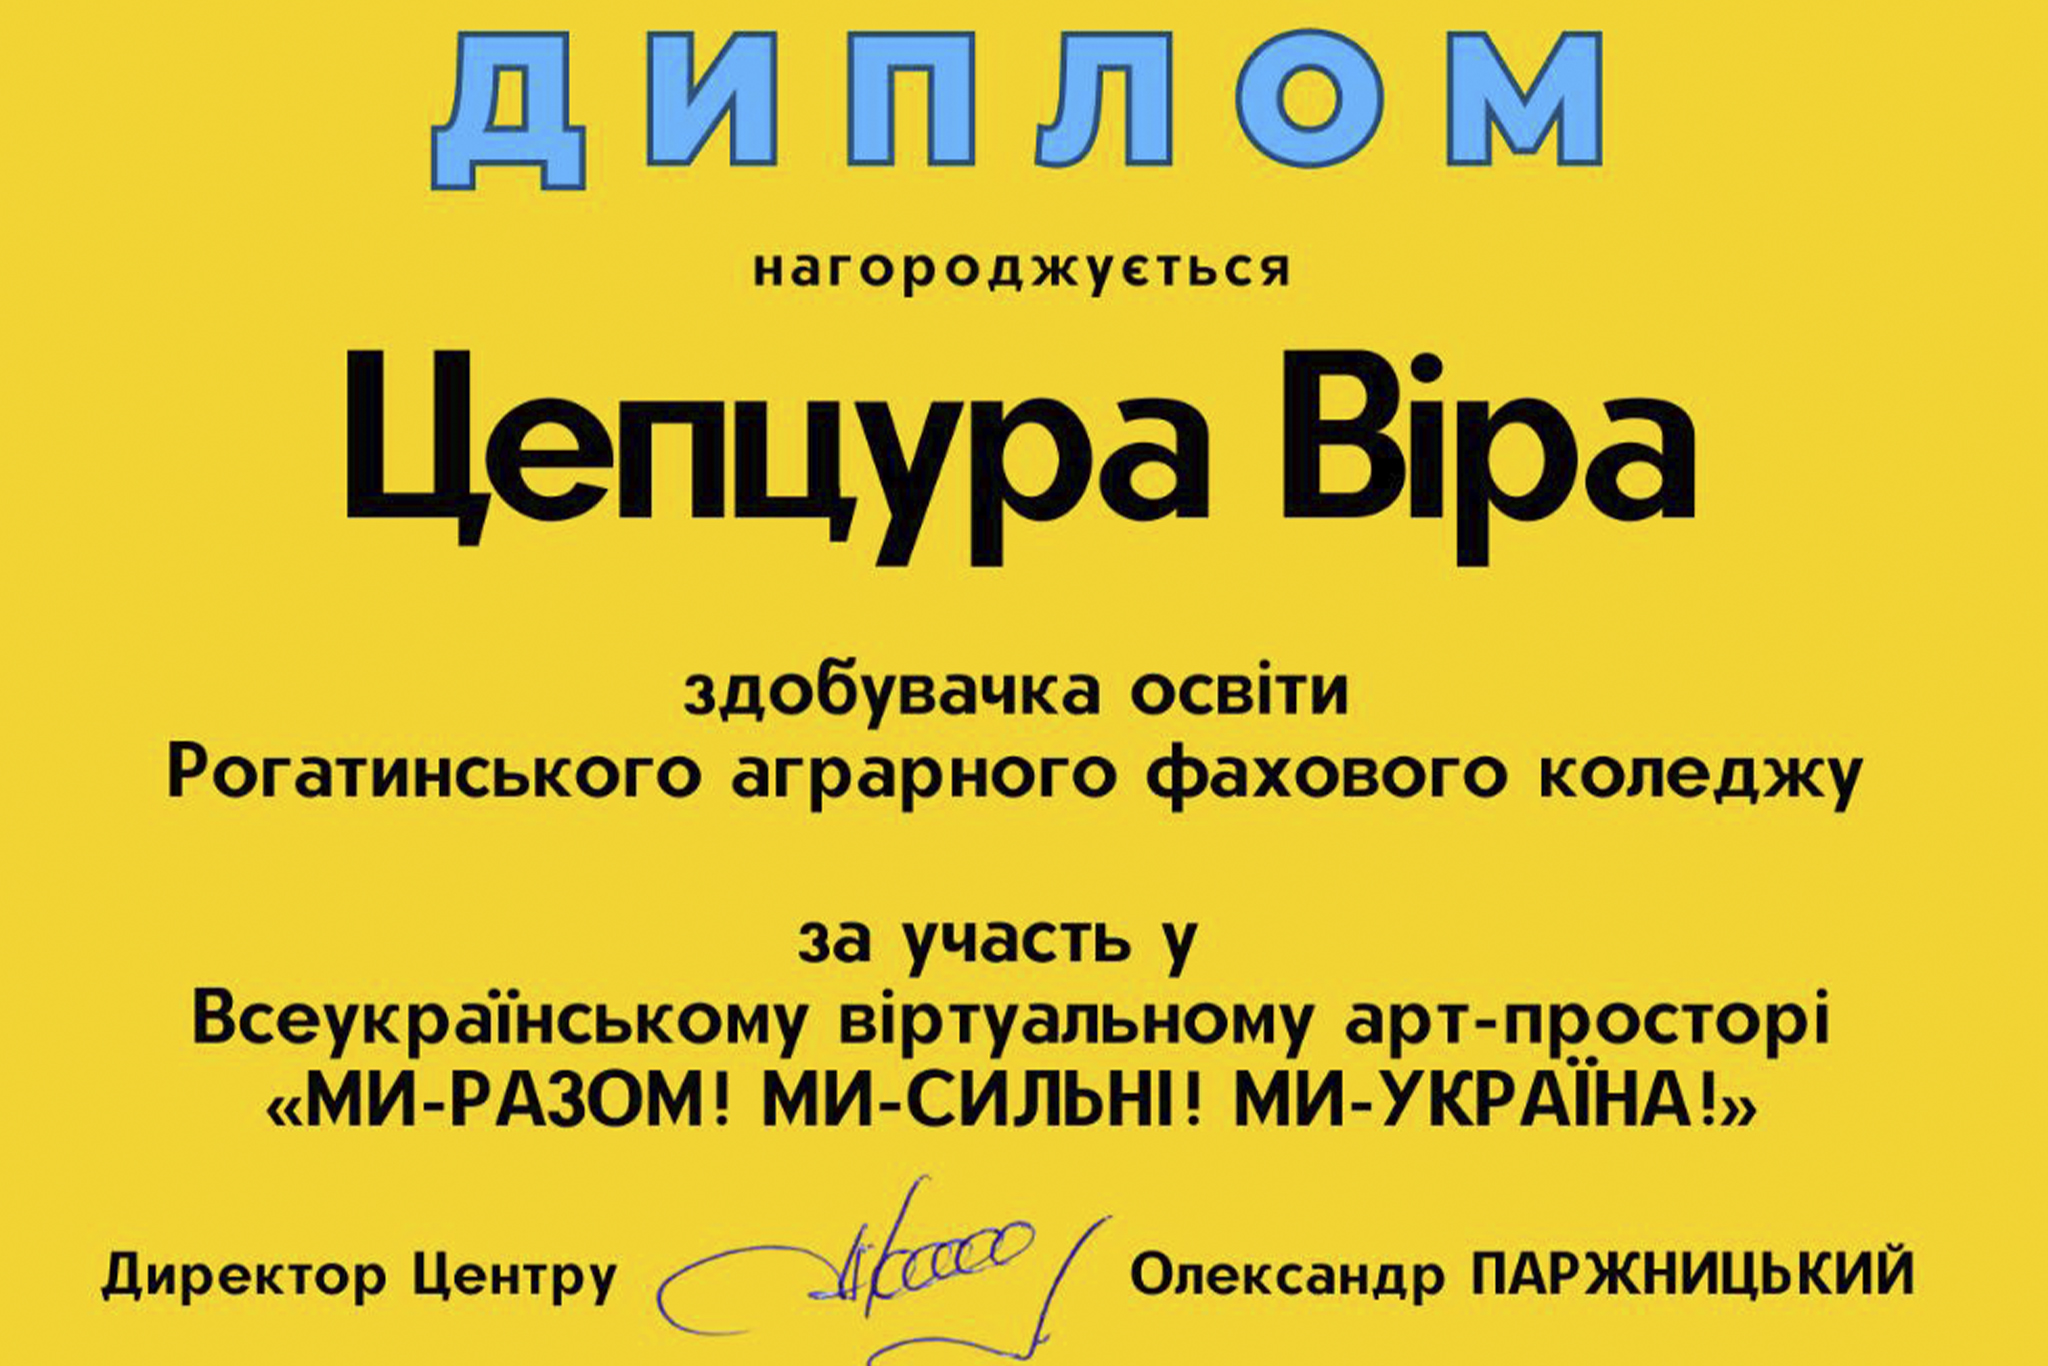 Всеукраїнський віртуальний арт-простір “Ми -сильні! Ми – разом! МИ – Україна”.